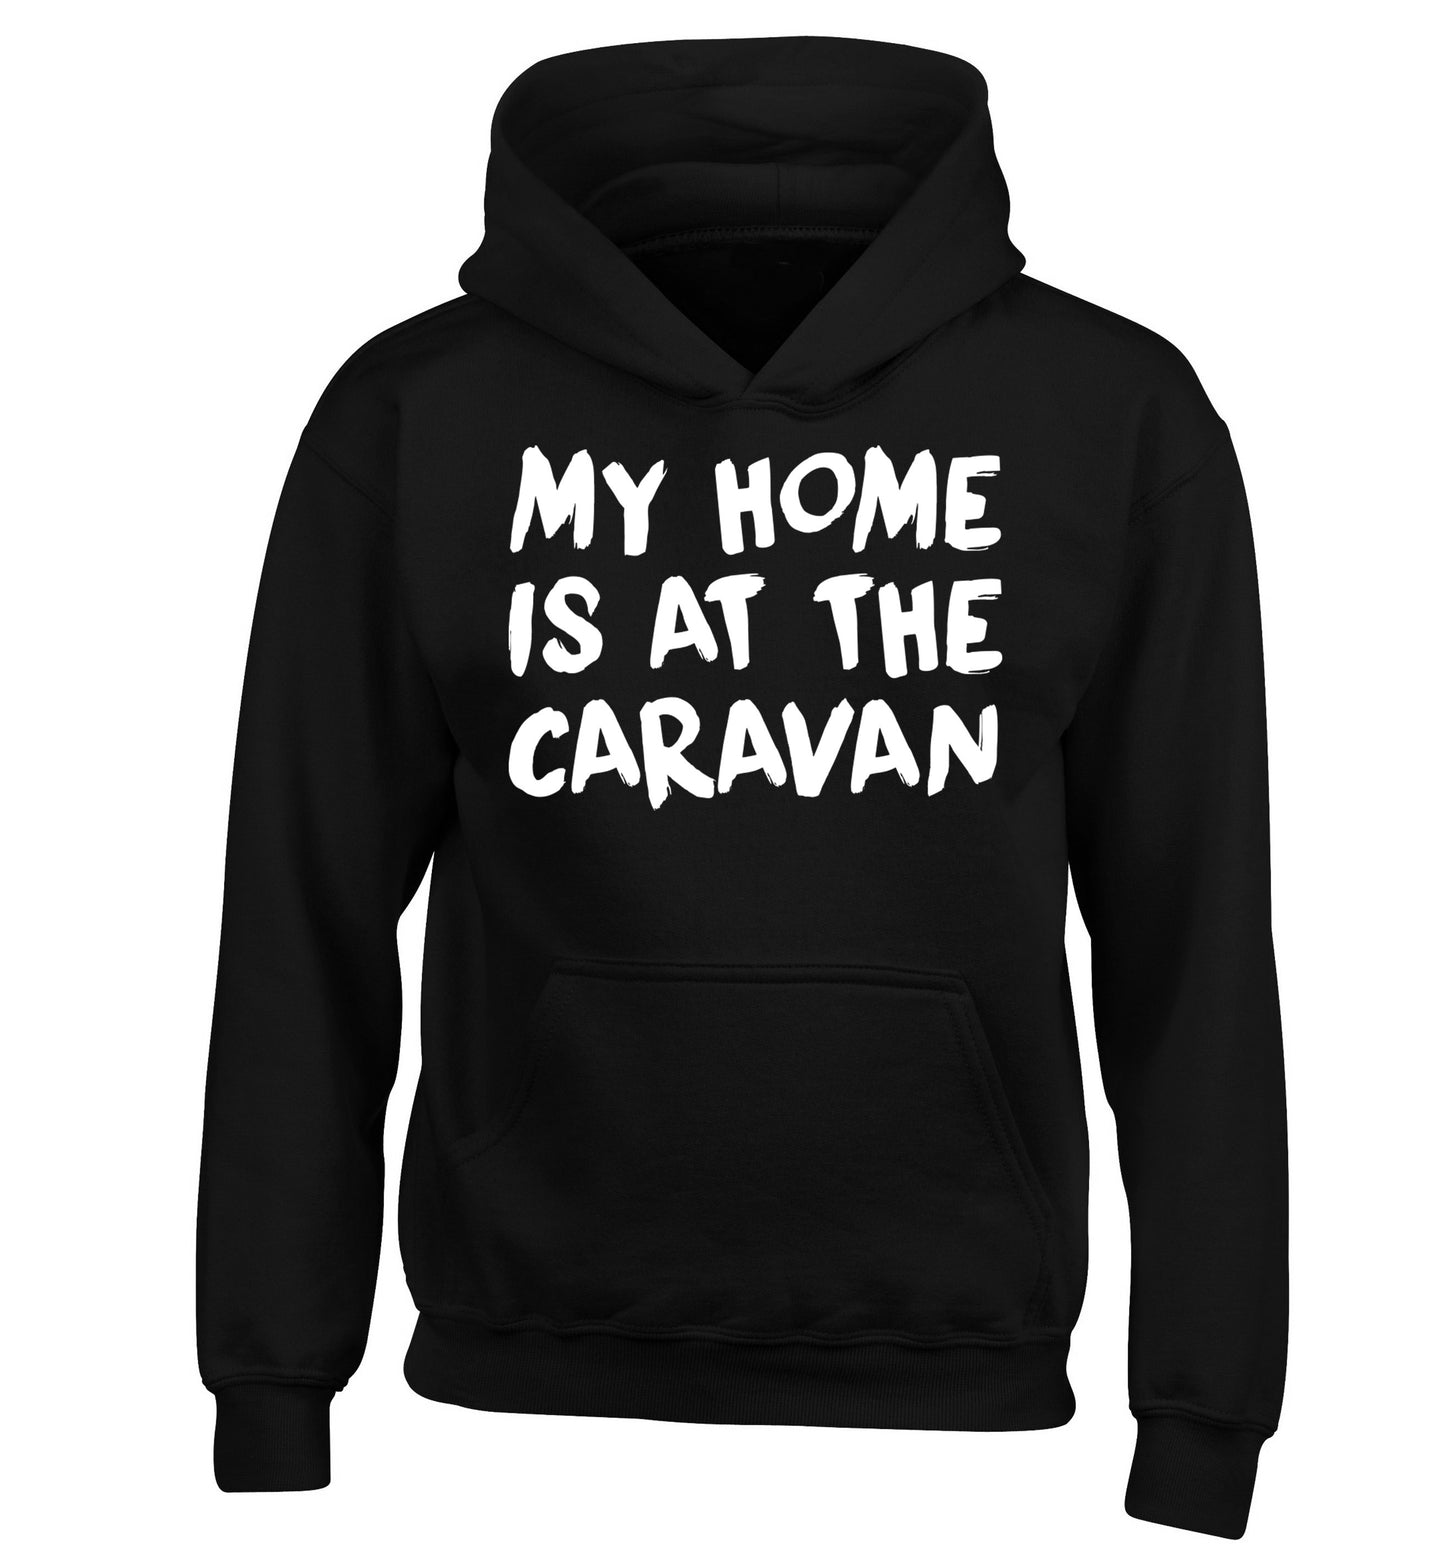 My home is at the caravan children's black hoodie 12-14 Years